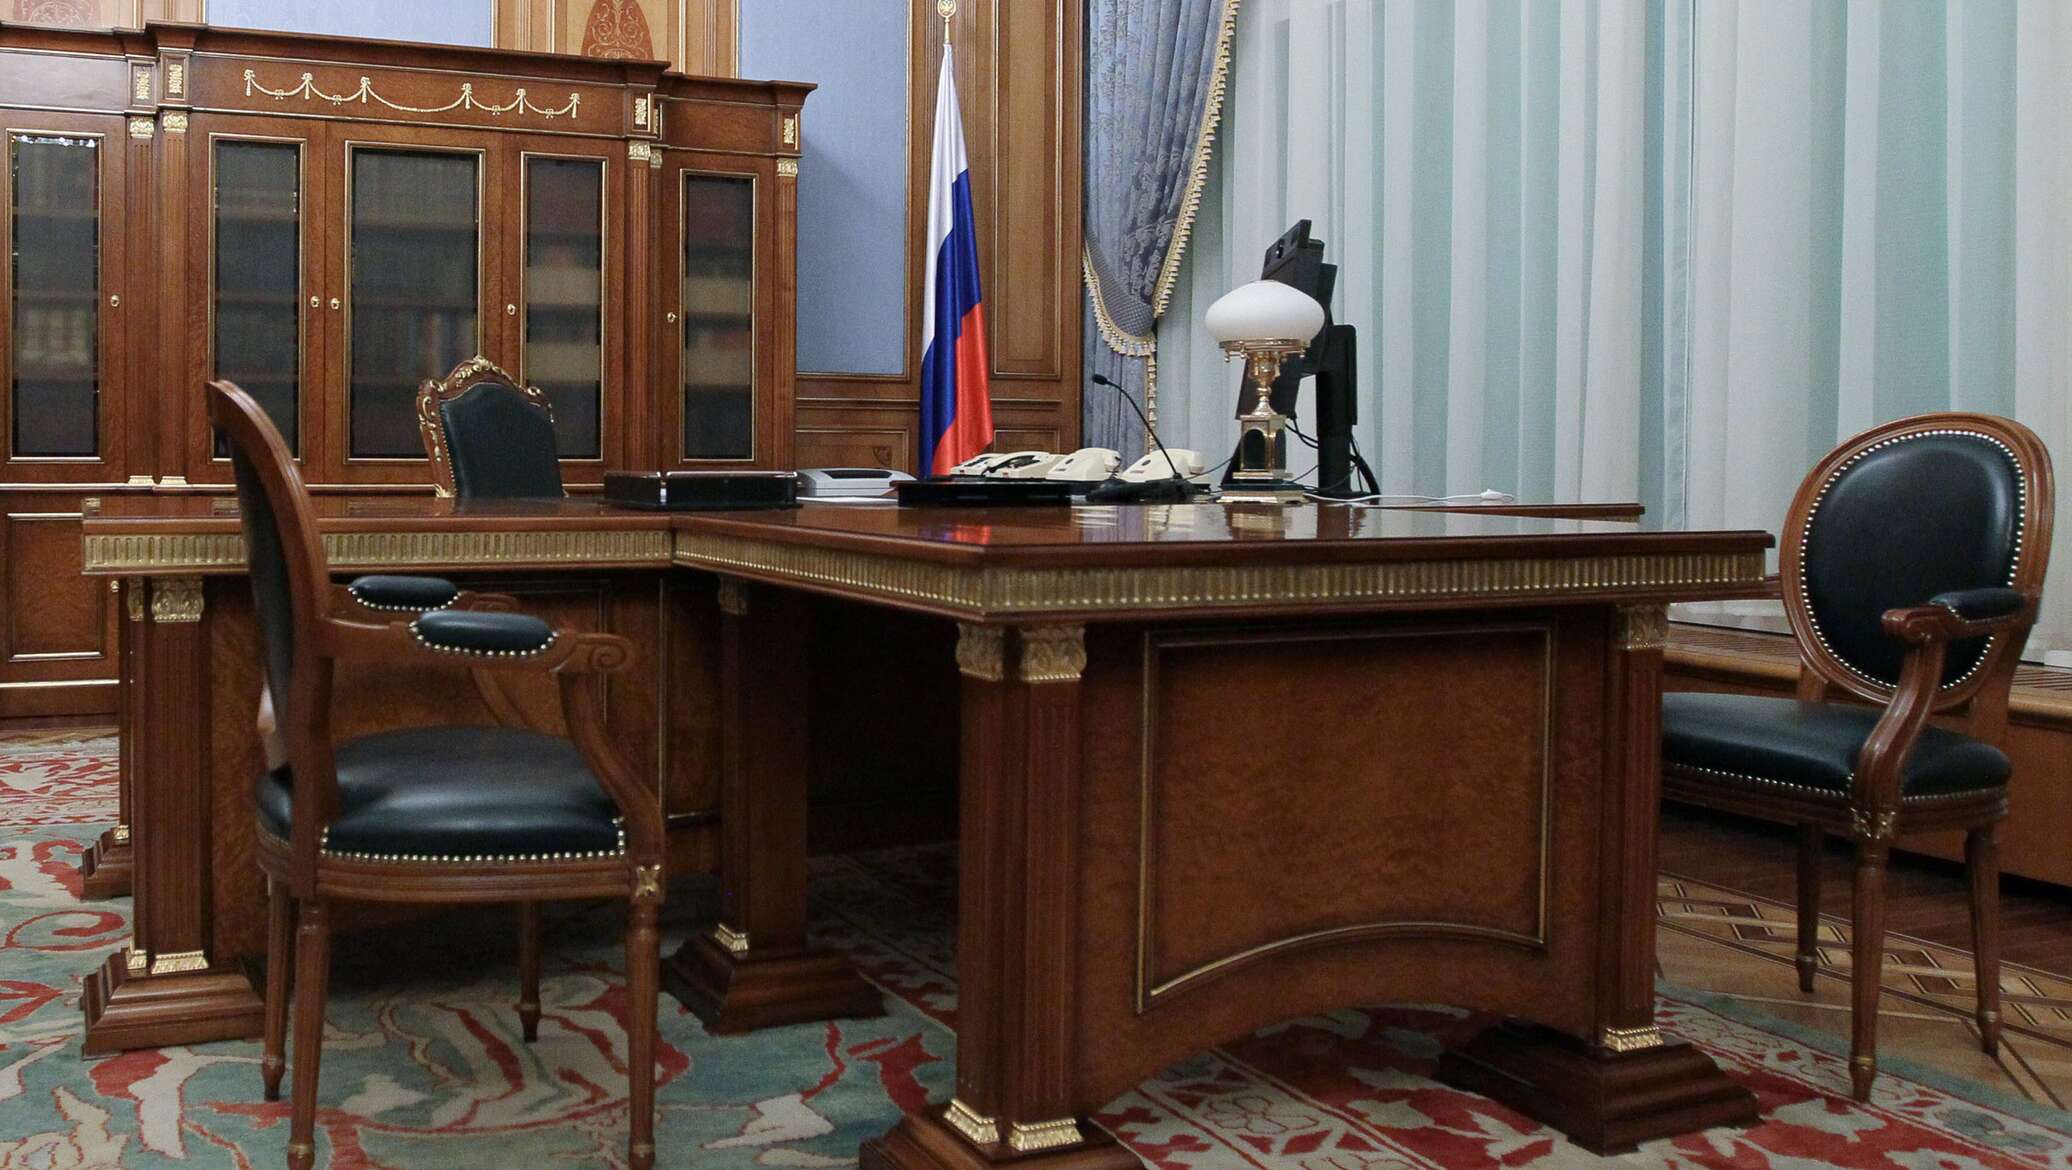 Цветок у путина в кабинете в кремле название фото